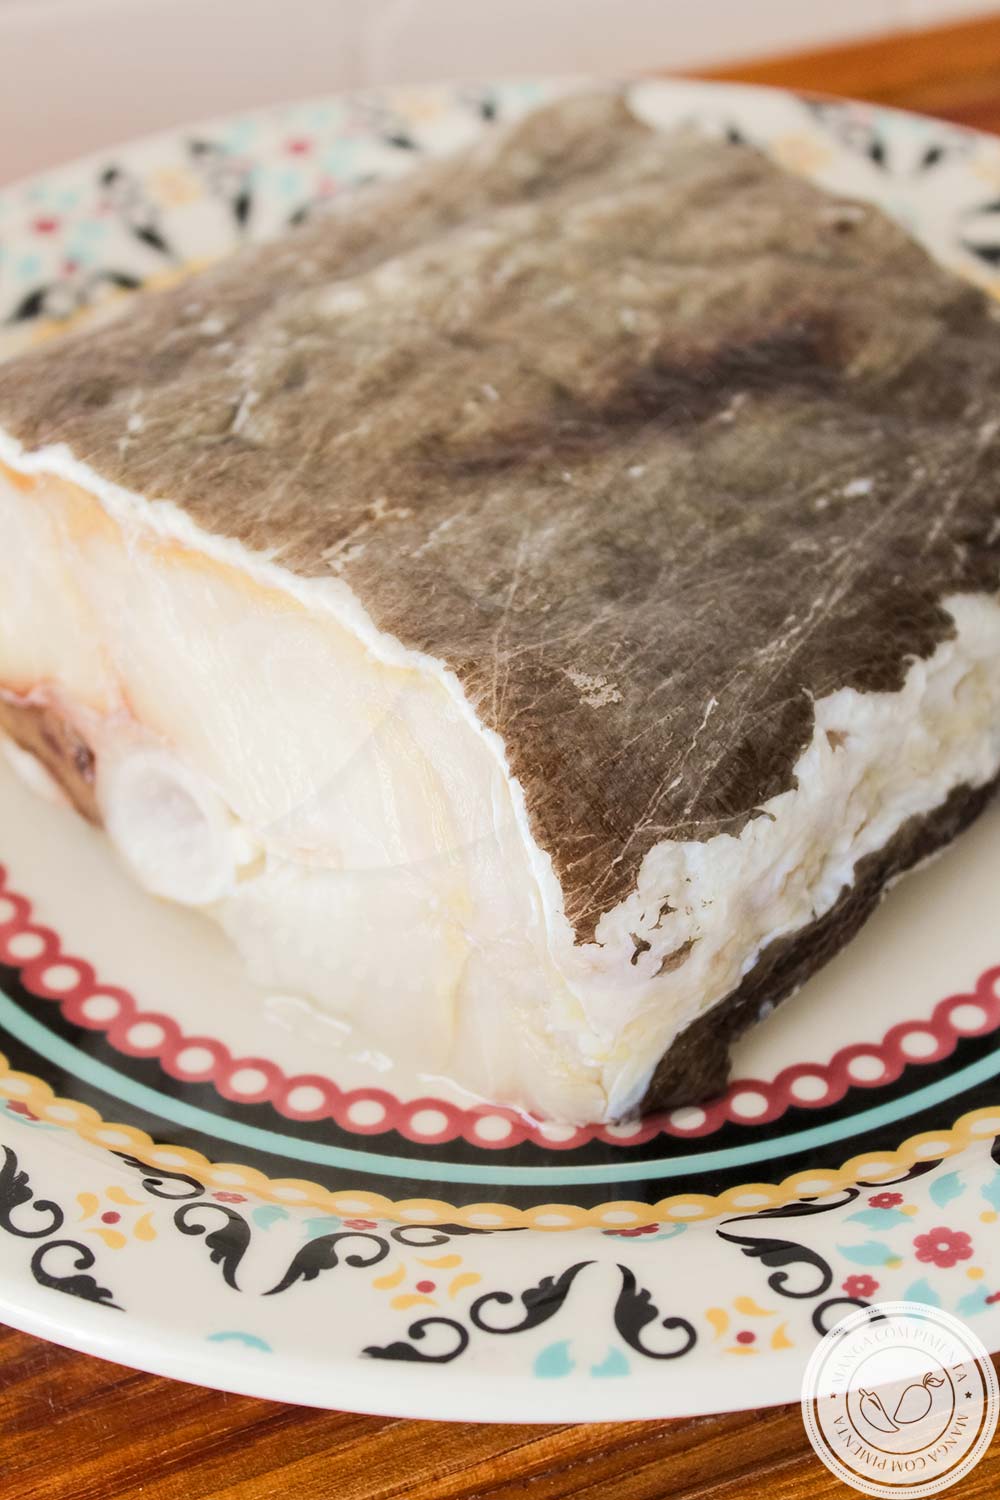 Aprenda a Dessalgar Bacalhau da forma rápida e na tradicional - Antes de preparar pratos deliciosos com esse peixe!